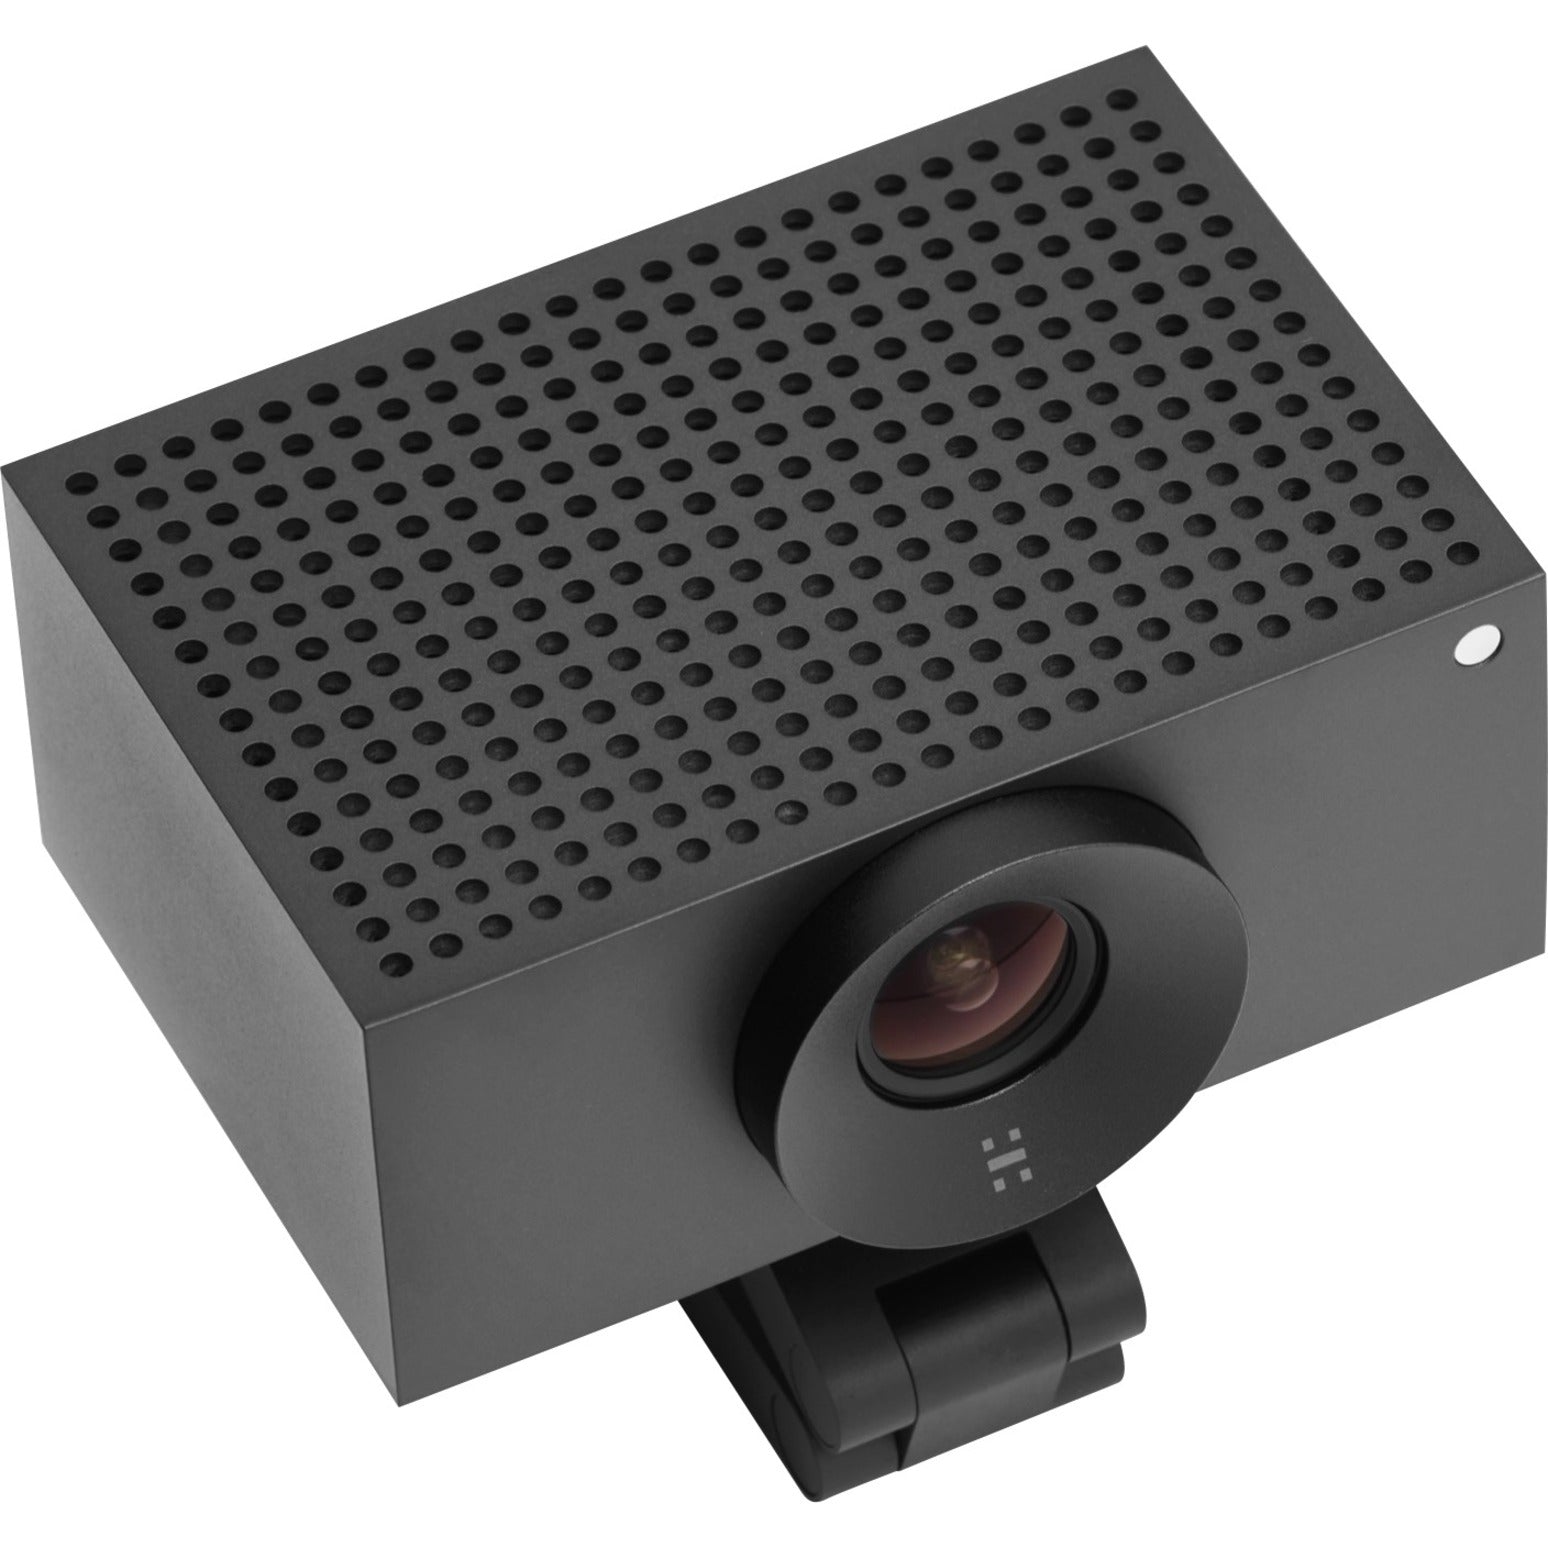 Huddly 7090043790764 S1 Video Conferencing Camera, 12 Megapixel, 30 fps, Matte Black